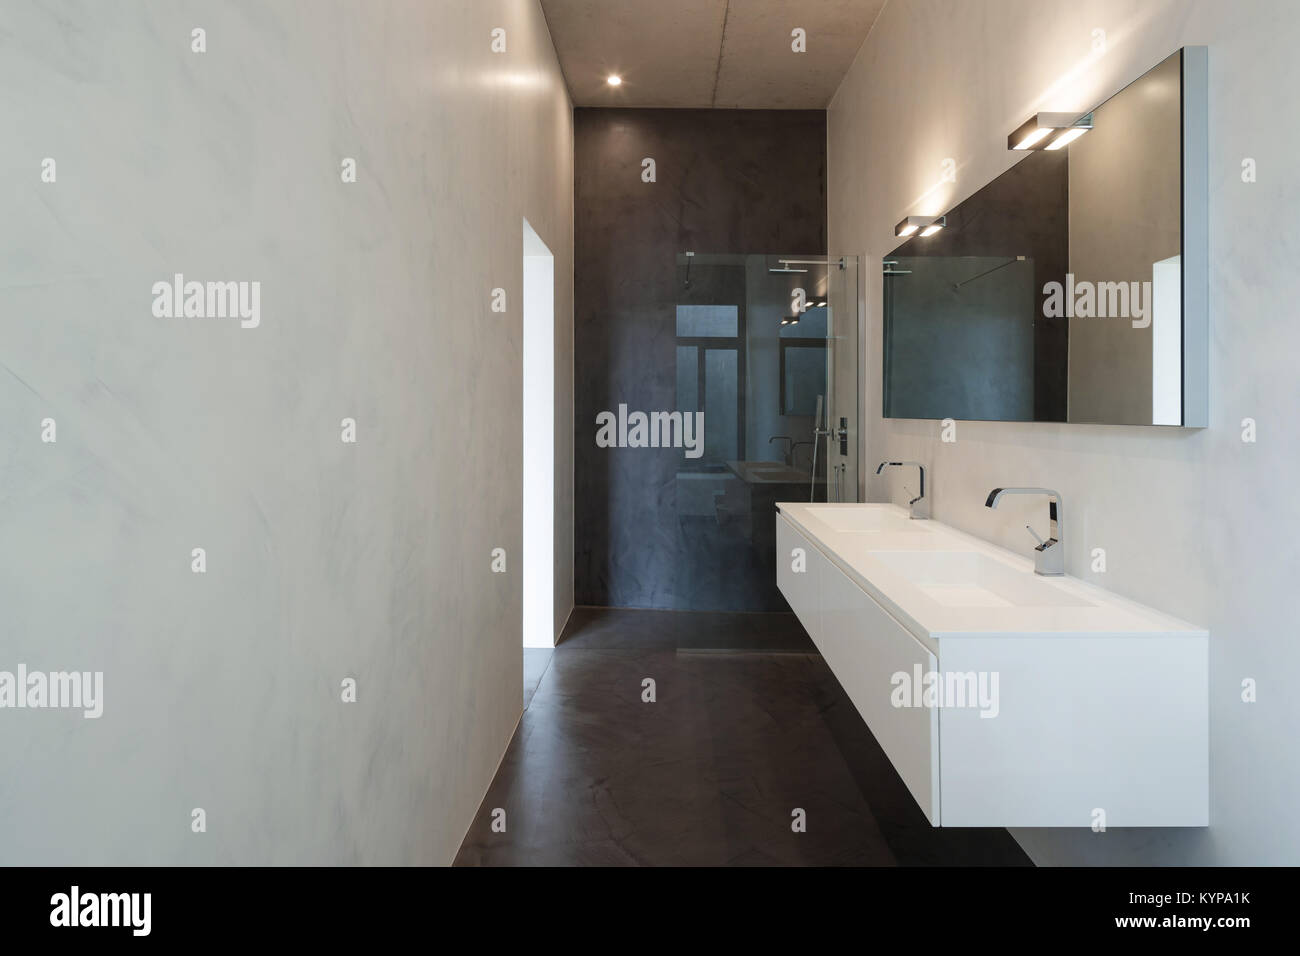 Intérieur de l'appartement, une salle de bains moderne avec douche et lavabo Banque D'Images